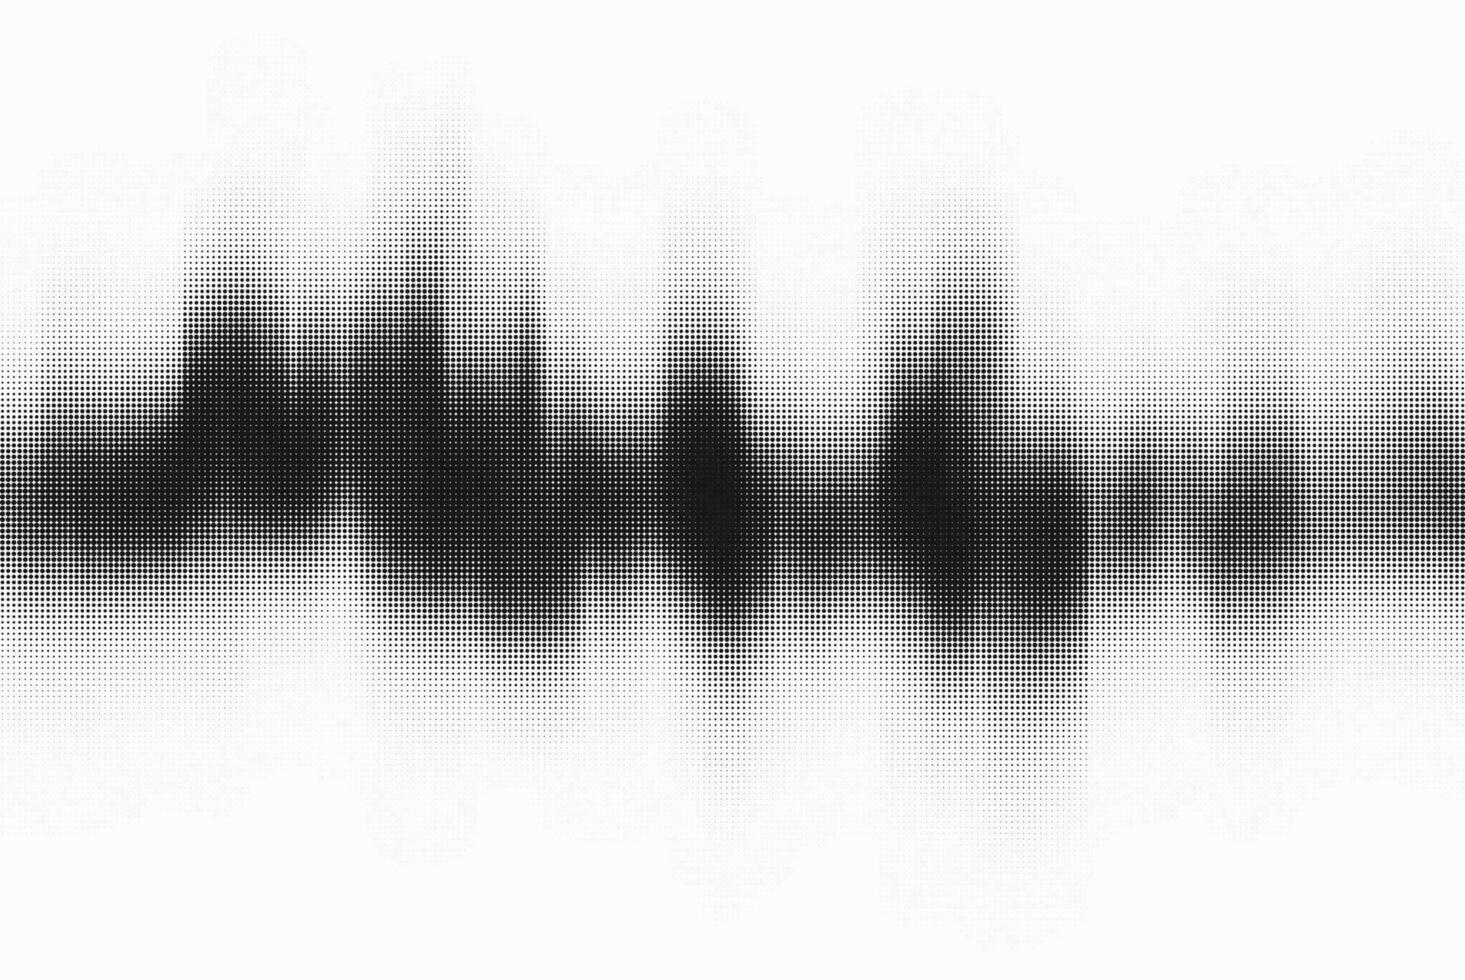 Vektor Halbton tonal verblassen abstrakt Vektor Hintergrund. Hälfte Ton Welle Muster mit glatt schwarz und Weiß Übergänge.